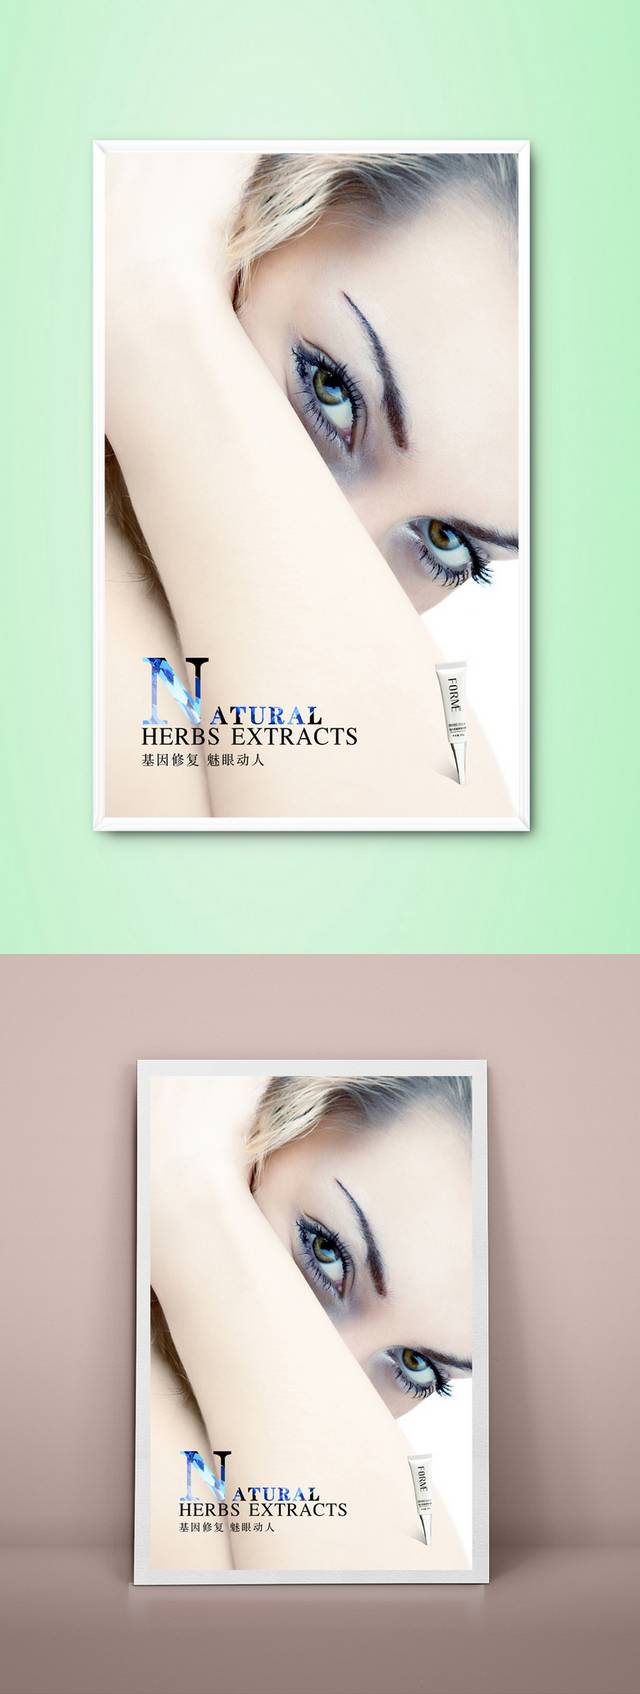 国外化妆品海报设计